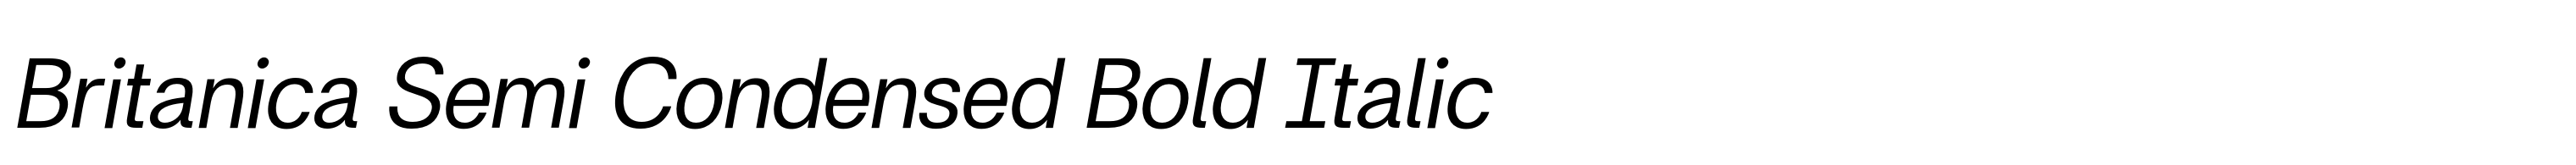 Britanica Semi Condensed Bold Italic